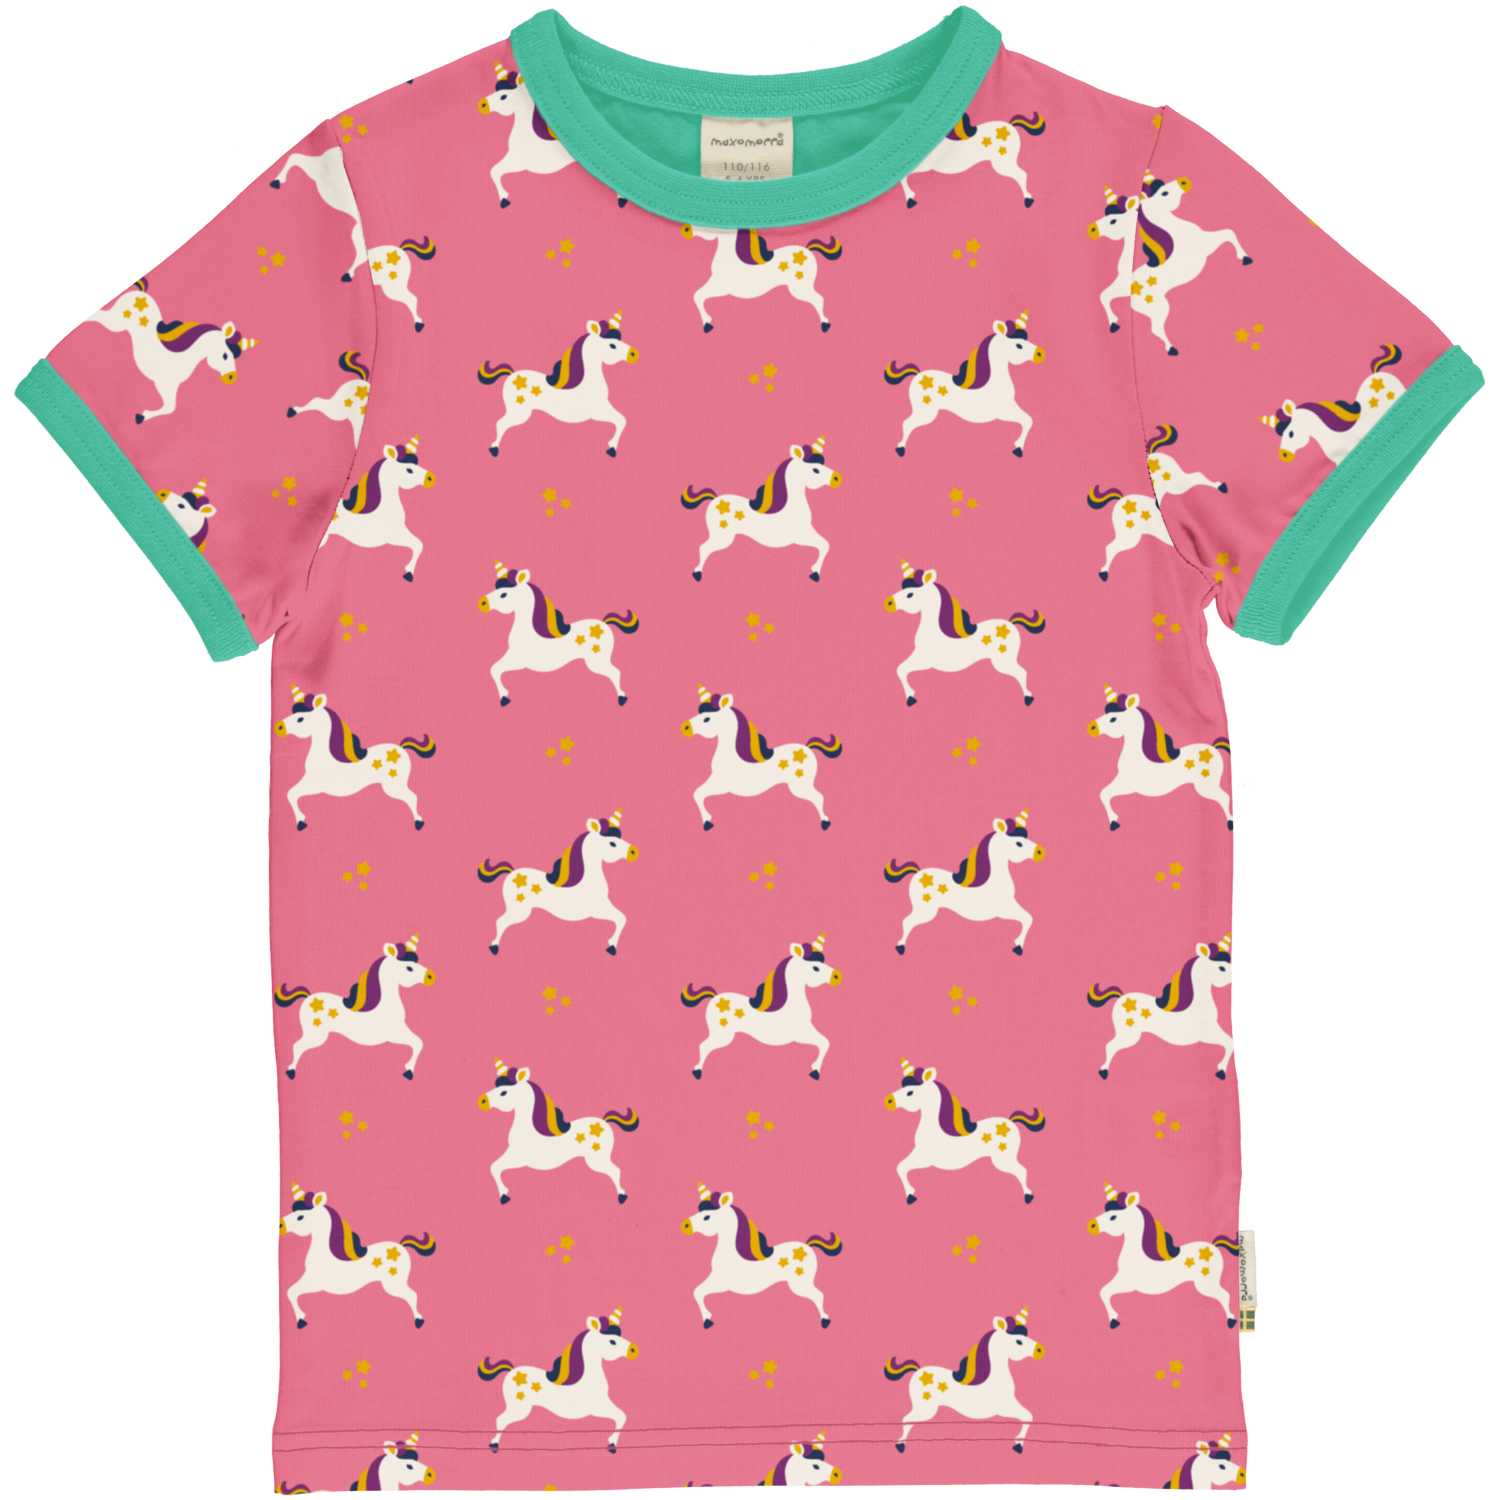 Maxomorra Pink Unicorn Printed Top Dxs2413-Sxs2410 Clothing 3-4YRS / Pink,5-6YRS / Pink,7-8YRS / Pink,9-10YRS / Pink,1-2 YRS / Pink